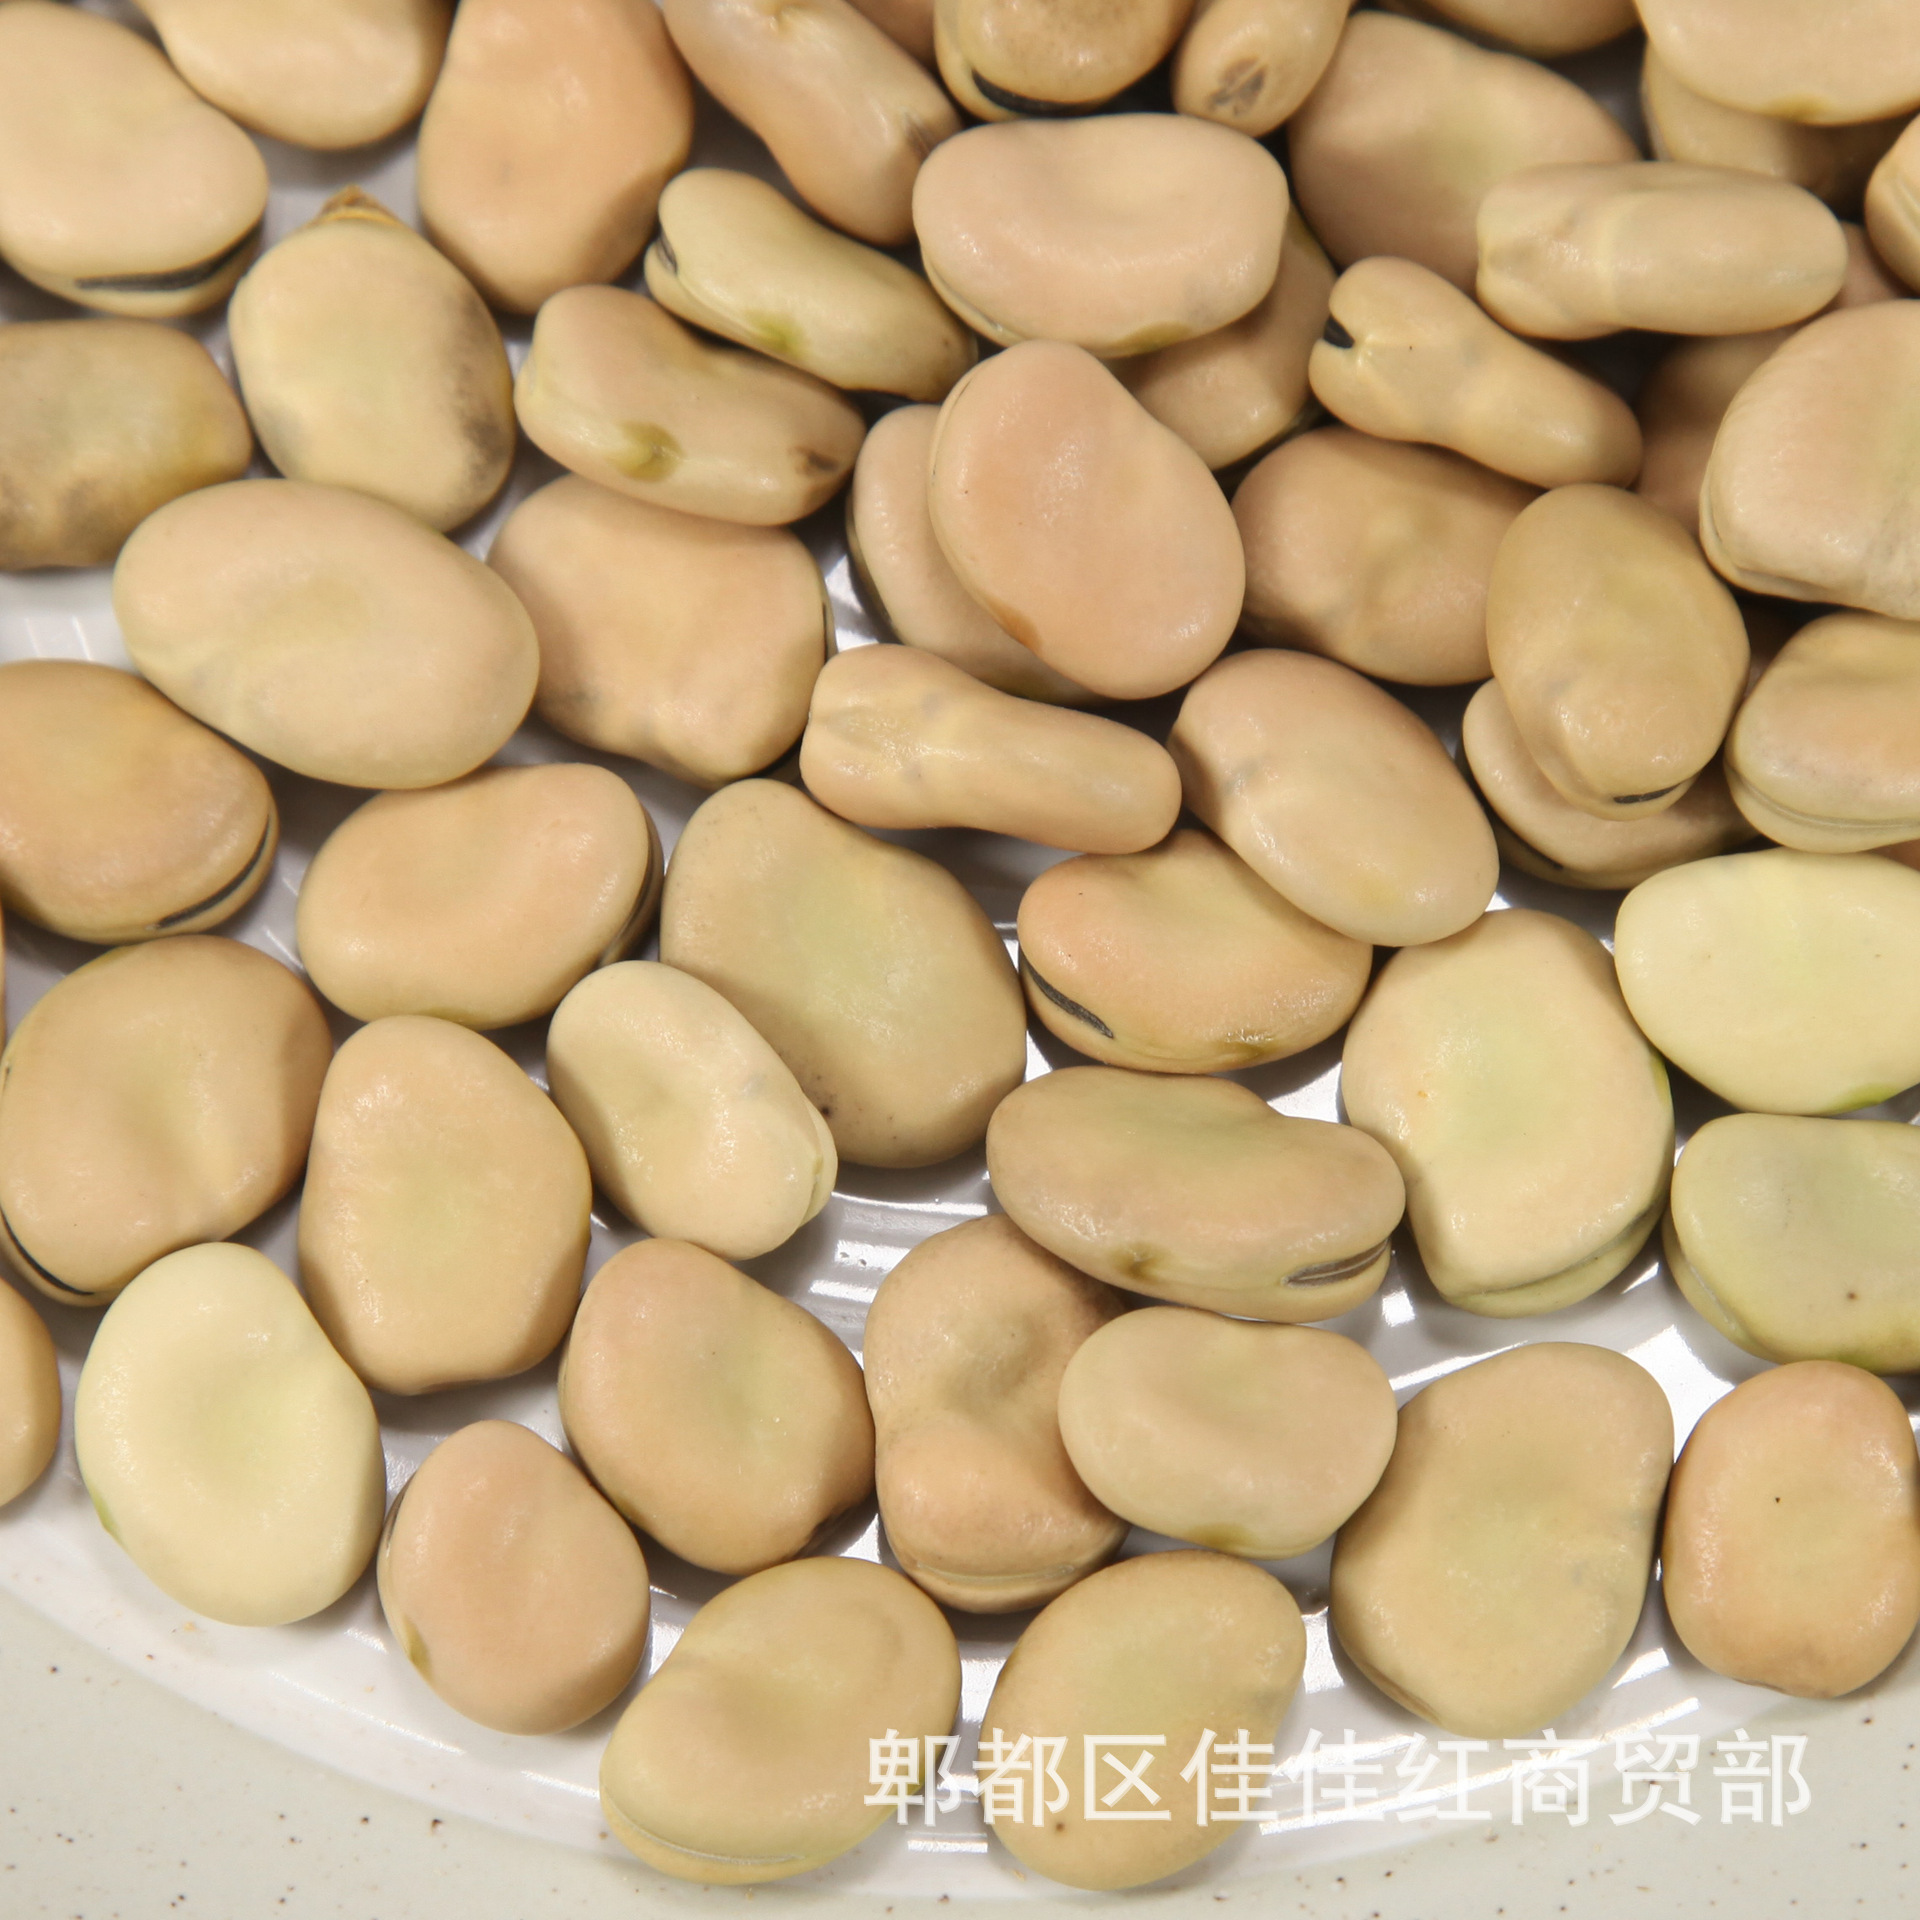 自家种的蚕豆到底是嫩 - 港城街巷 张家港爱上网/